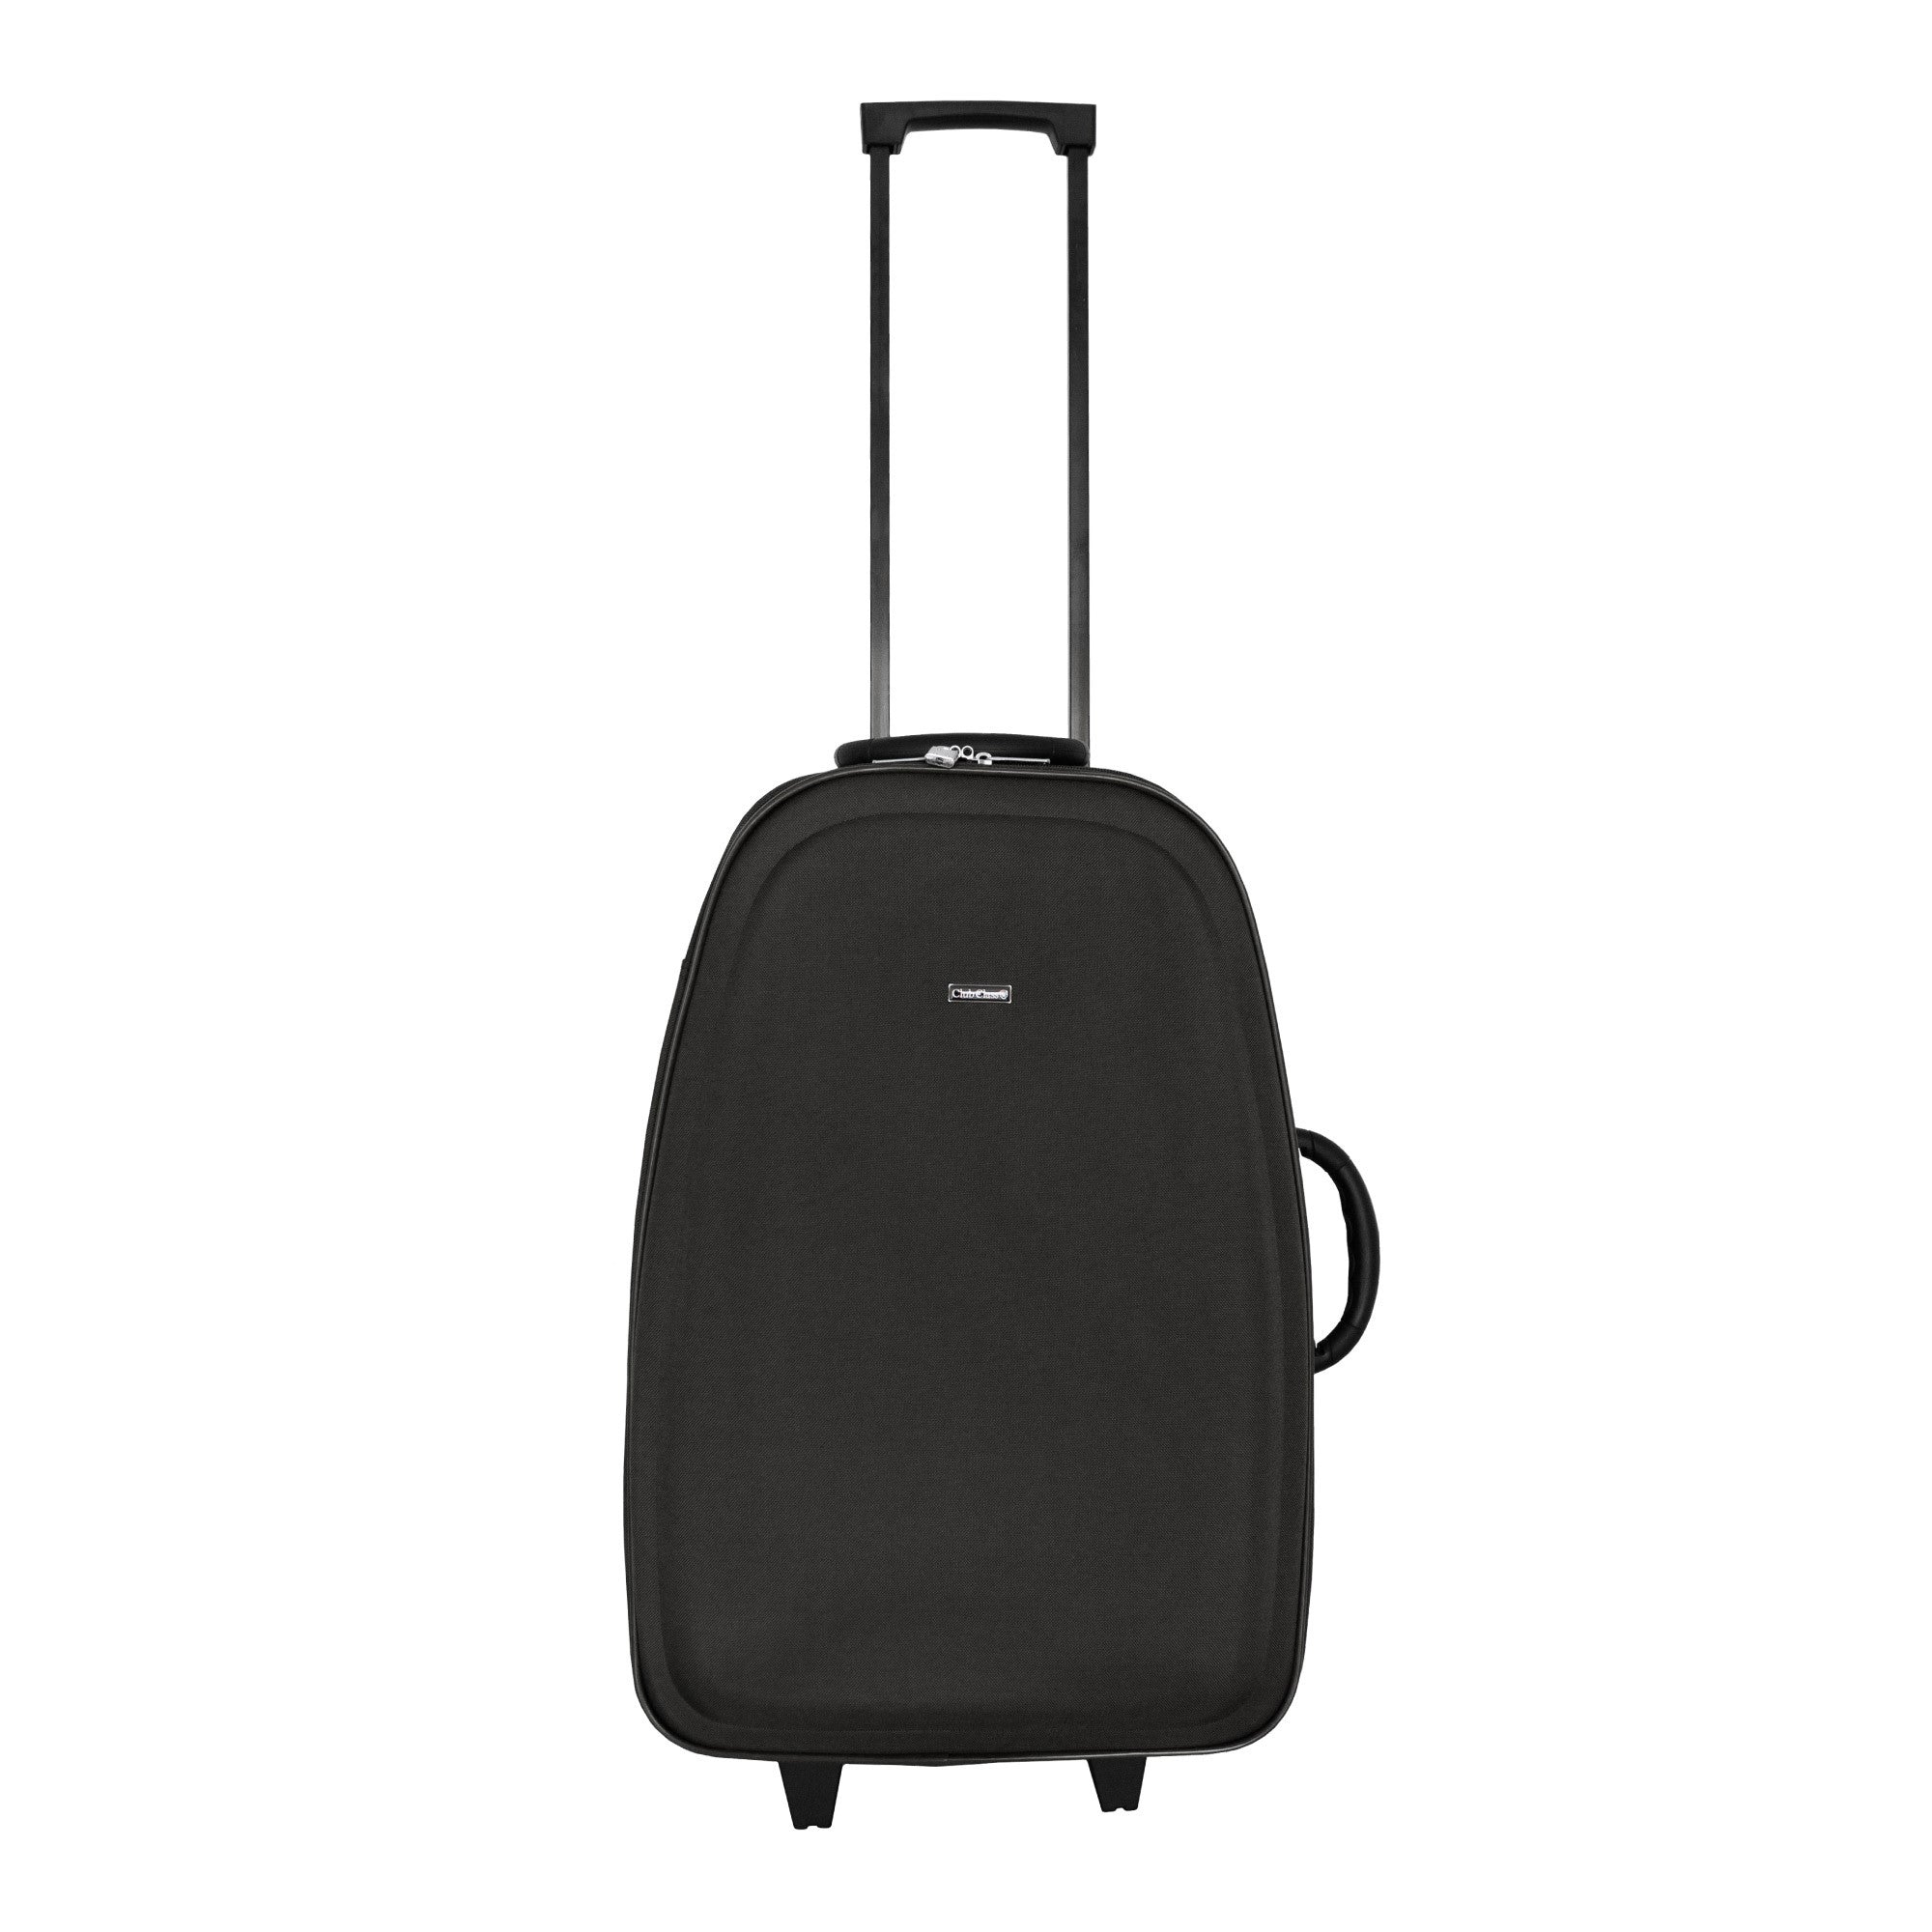 Club Class 600D EVA Suitcase - Black - Medium  | TJ Hughes